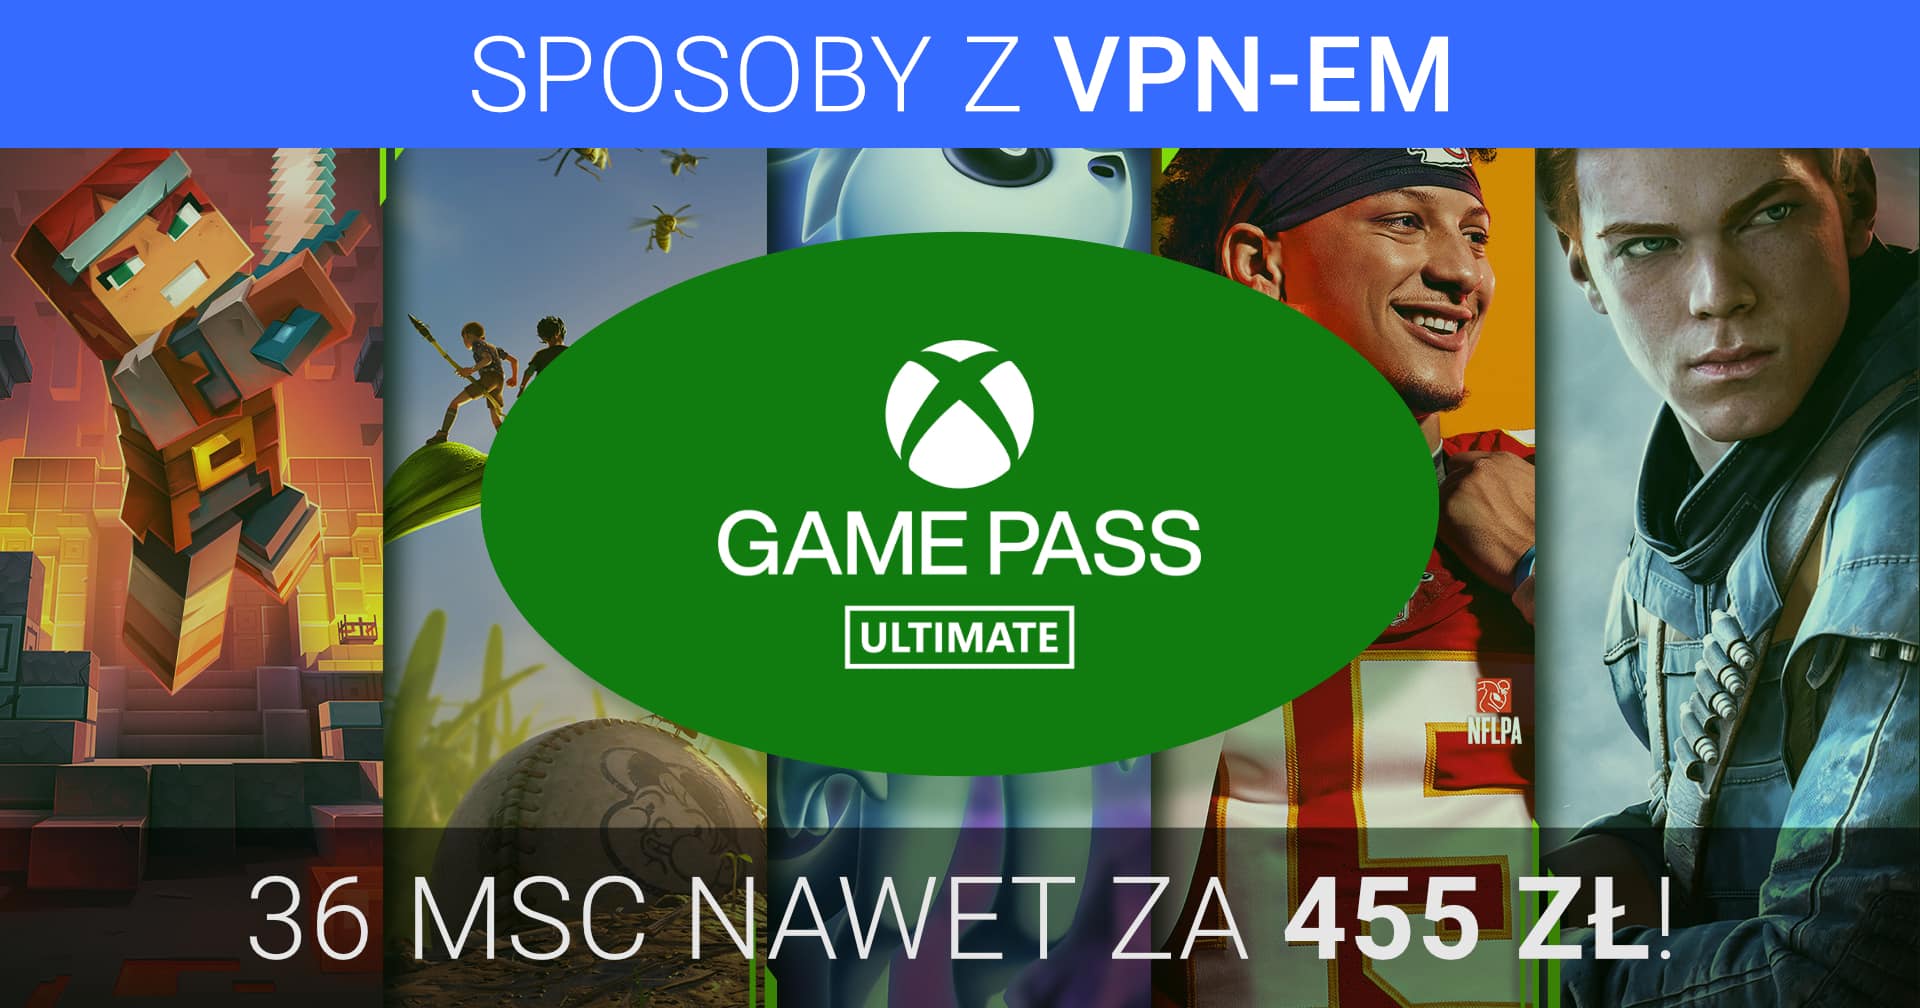 Xbox Game Pass Ultimate tanio z VPN-em – kup 36 miesięcy subskrypcji za ~ 455 zł!